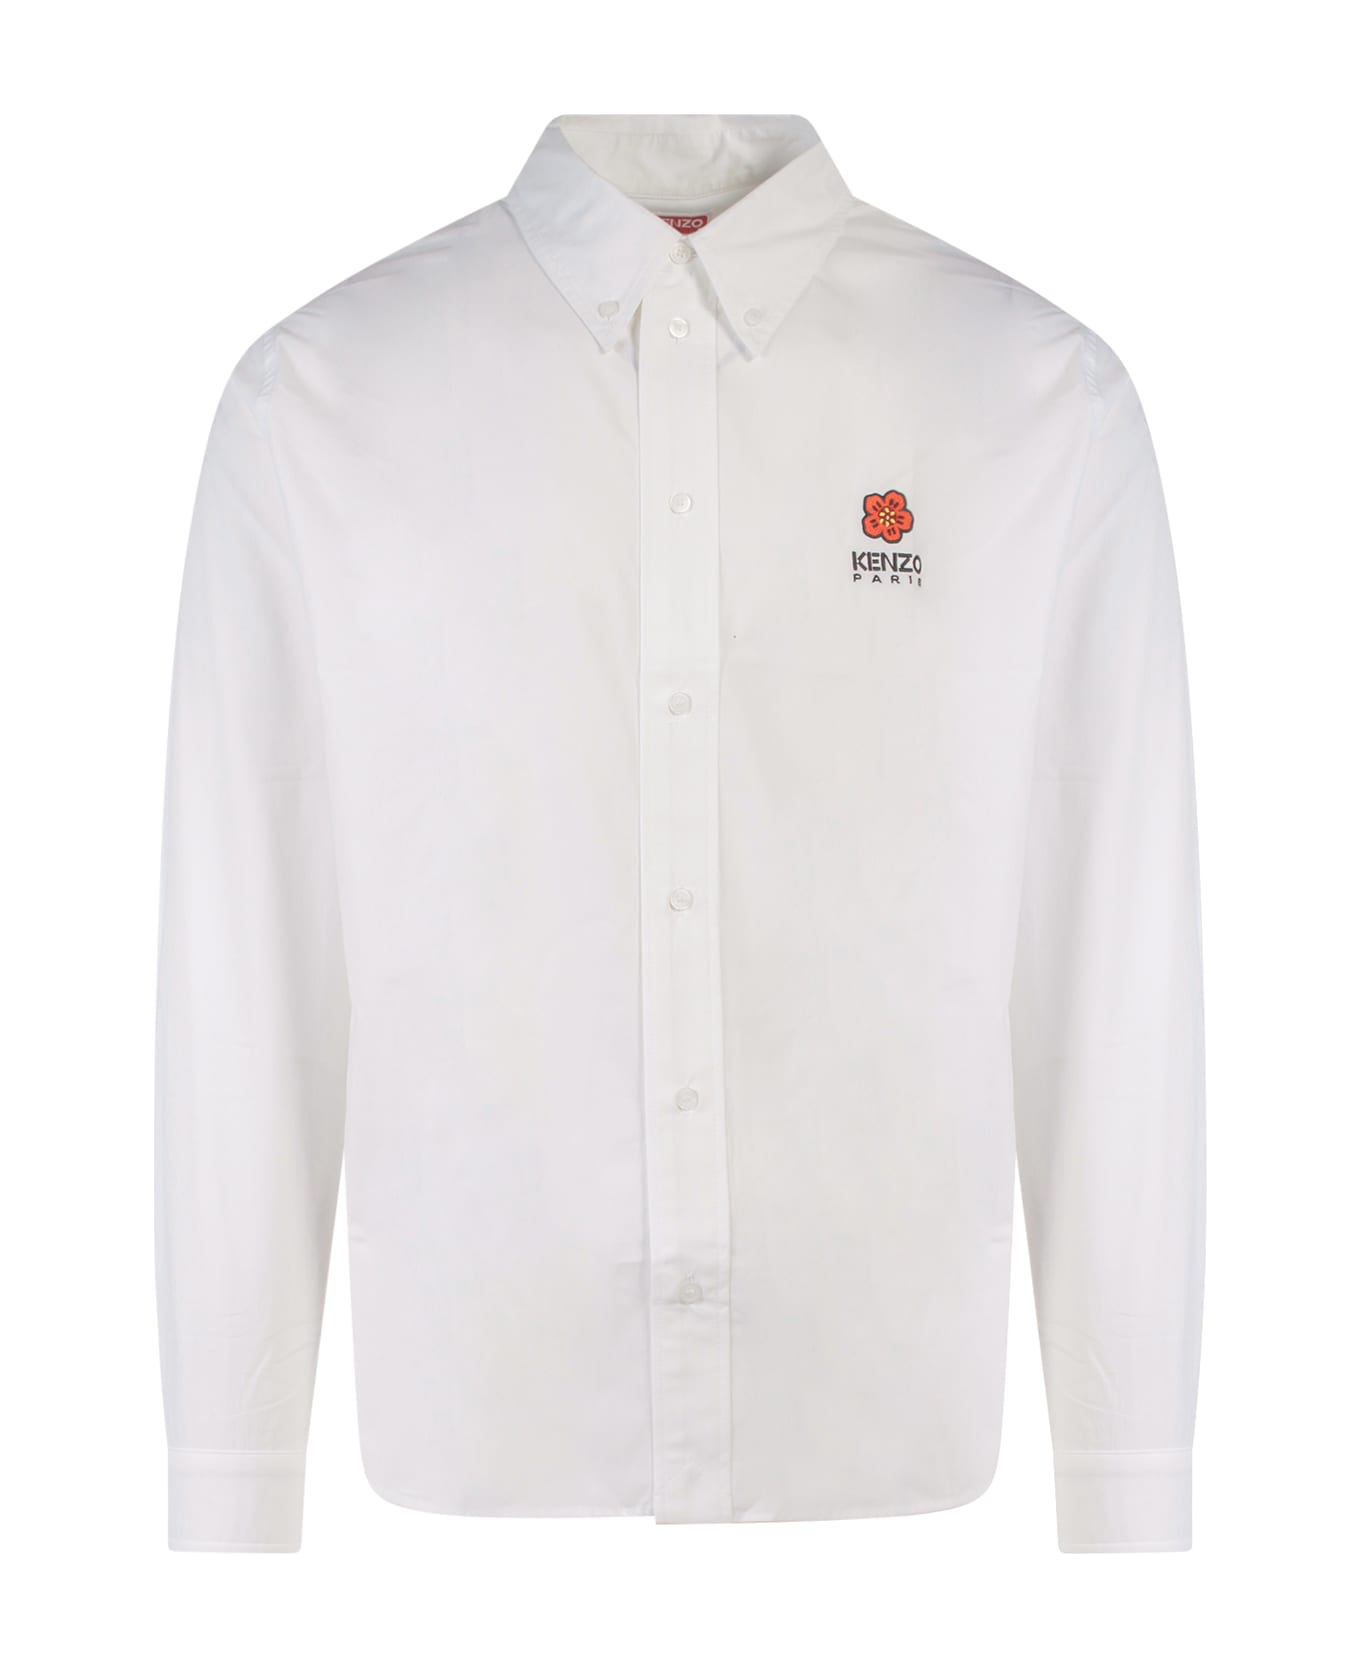 Kenzo Shirt - white